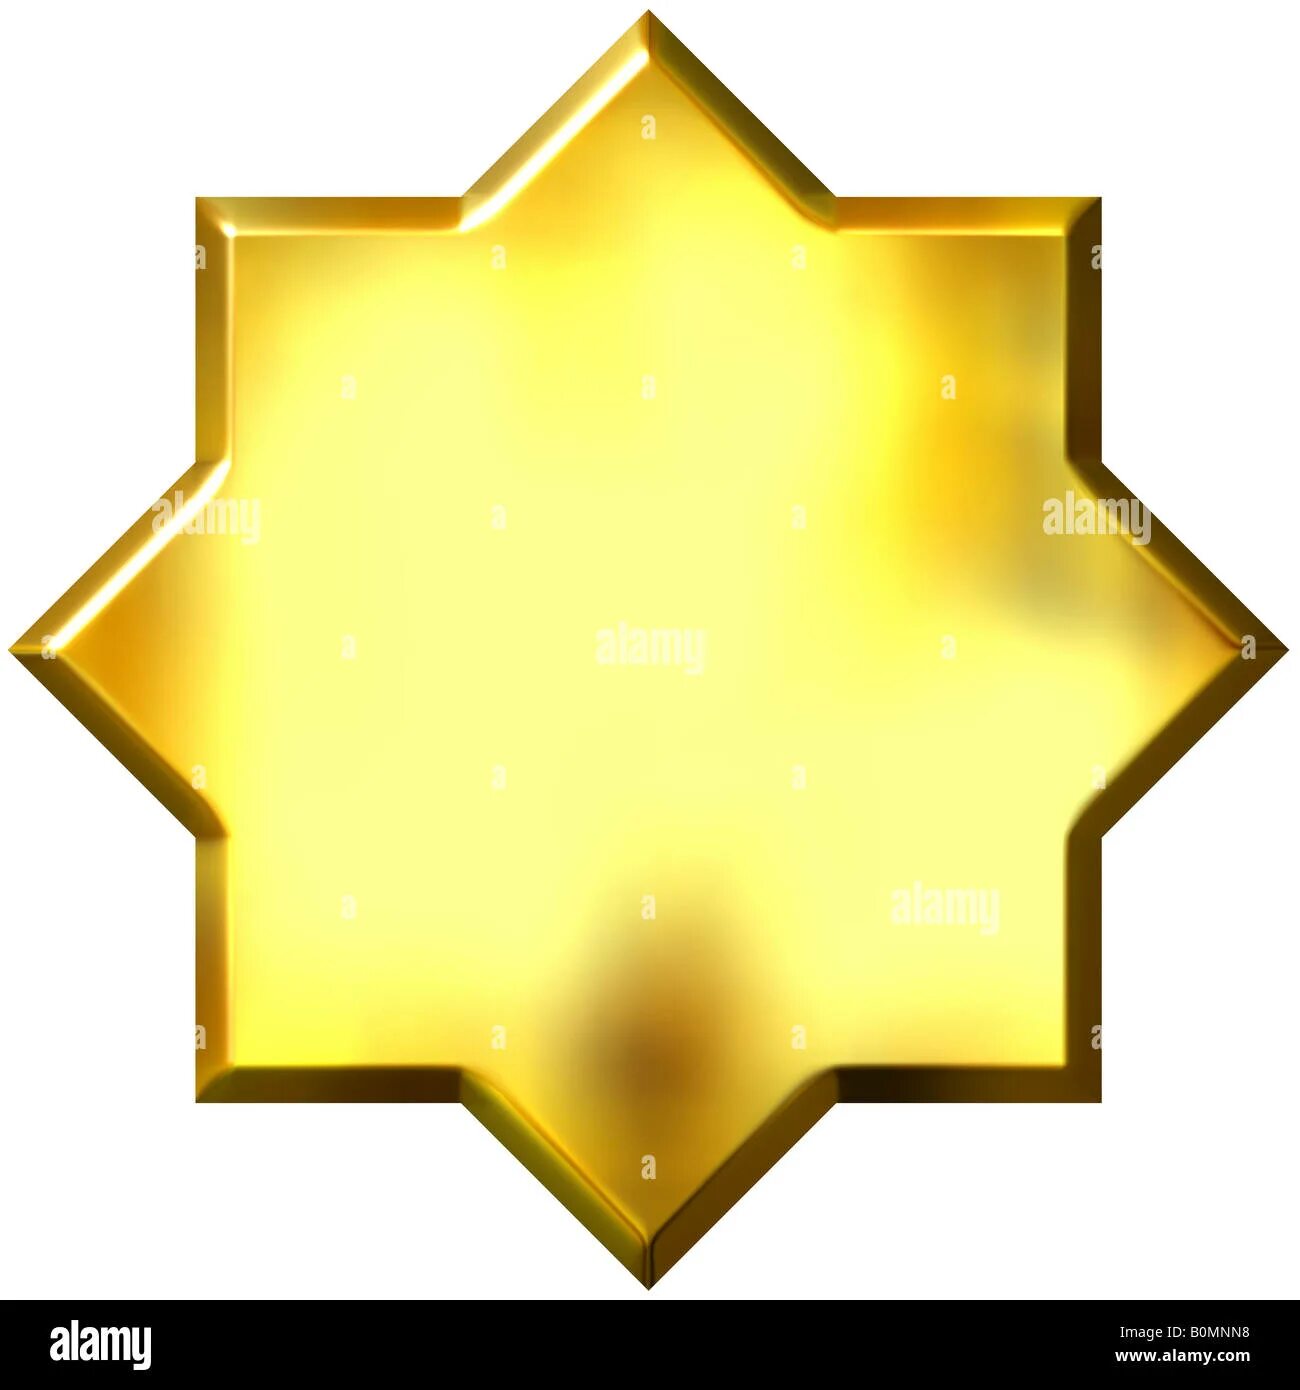 8 Угольная звезда. Восьмиугольник звезда. Звезда золото 8 угольная. Золотистая восьмиконечная звезда. Поставь 8 звезд